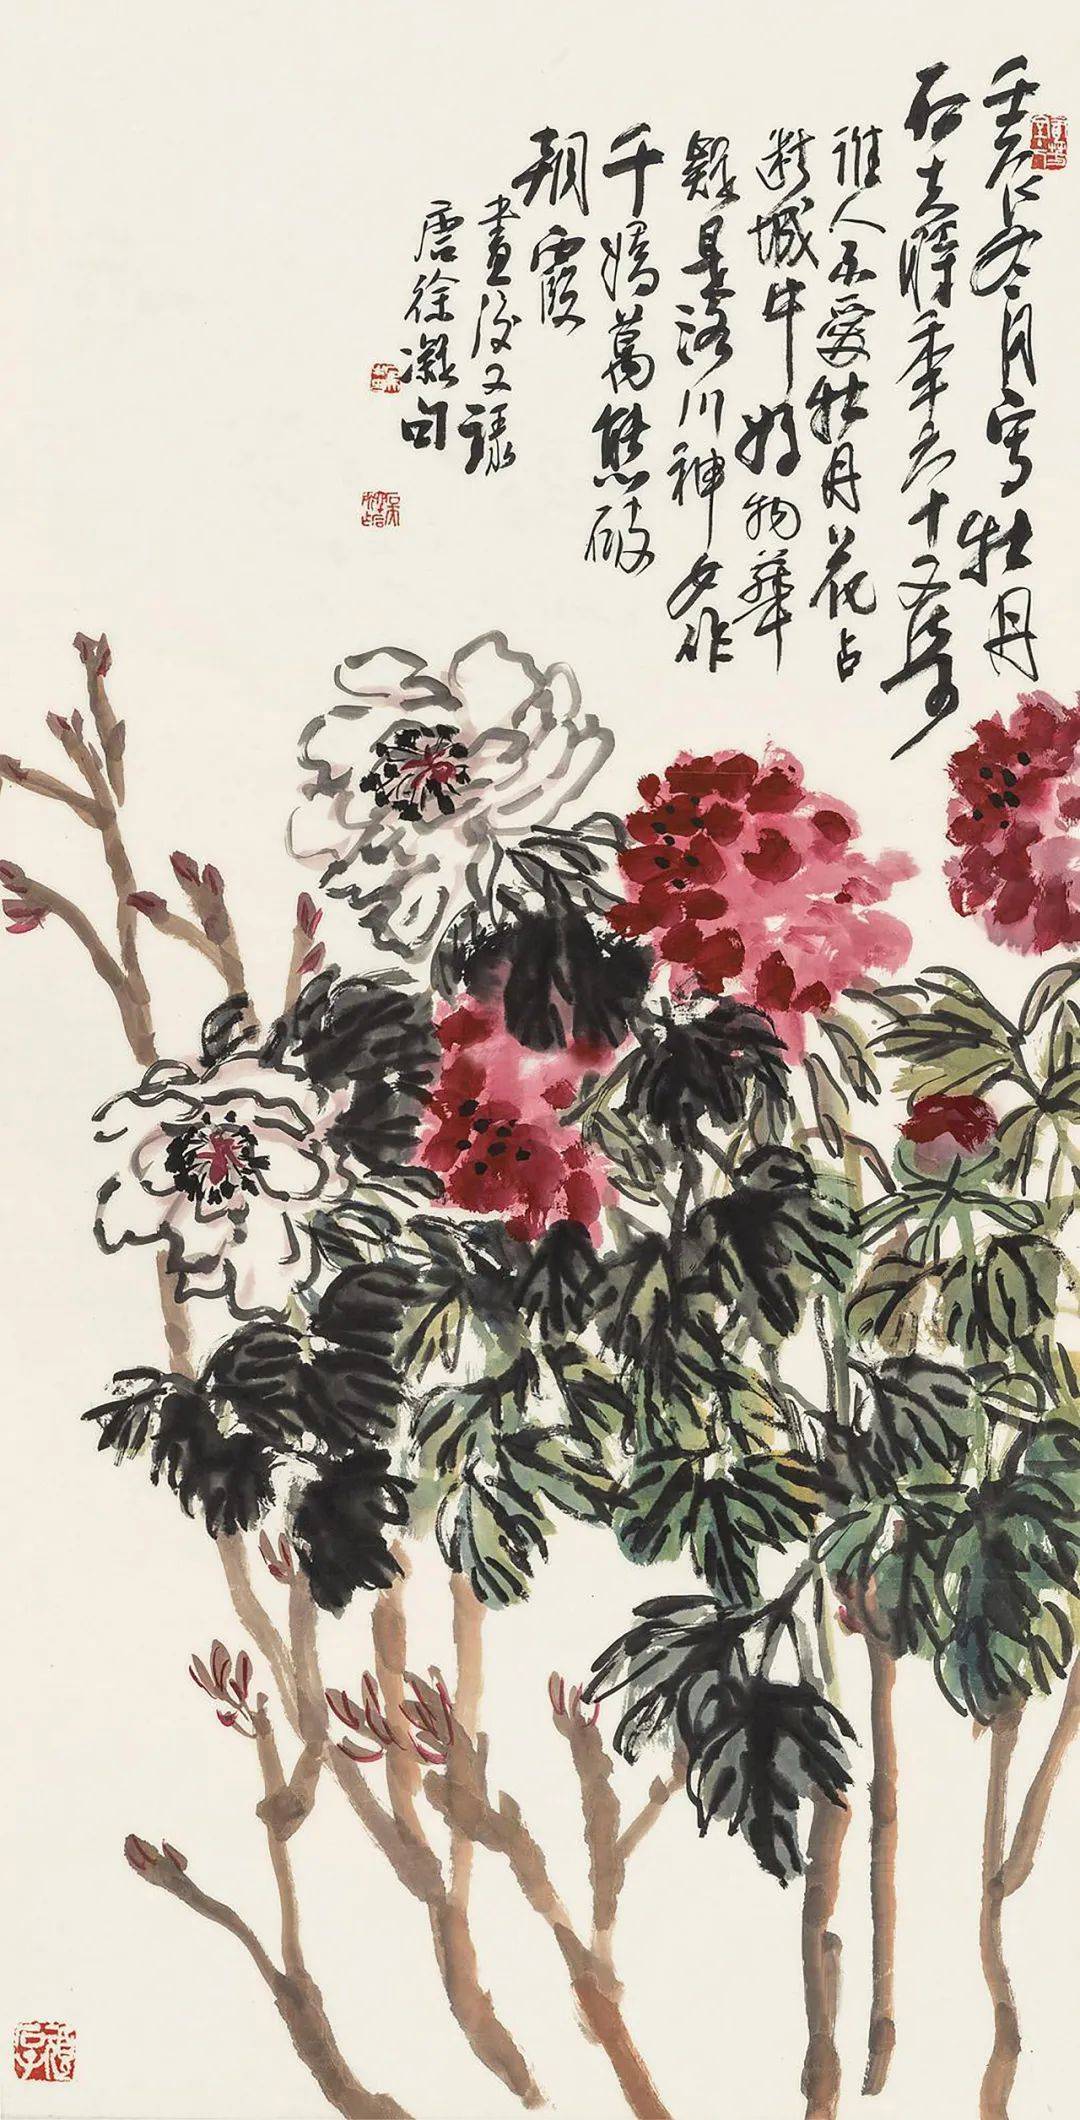 第1527期:郭石夫—2019年最高成交价前10幅作品,中国画家拍卖成交